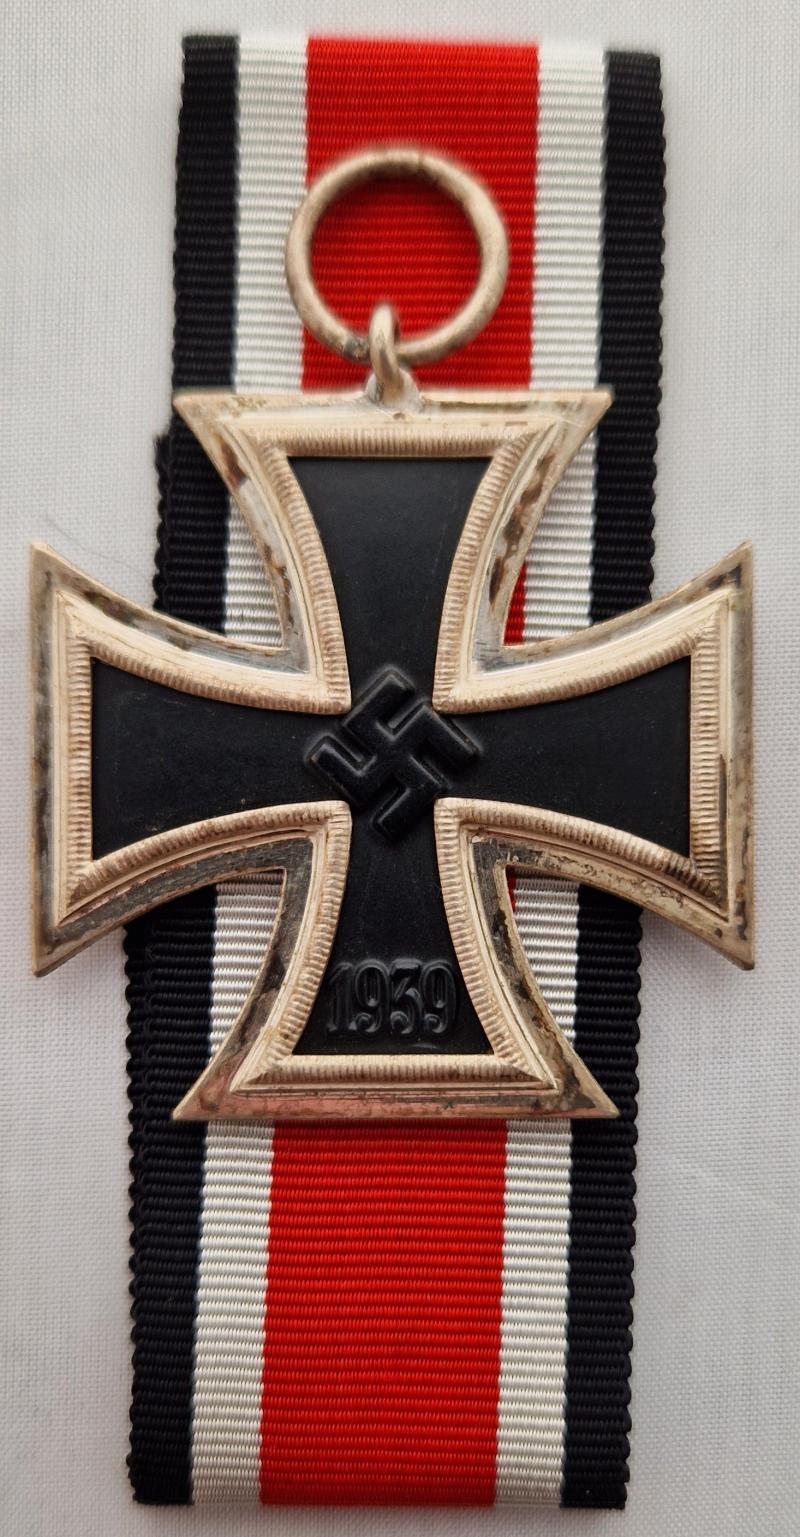 1939 Iron Cross Second Class by Wächtler und Lange Ref:16